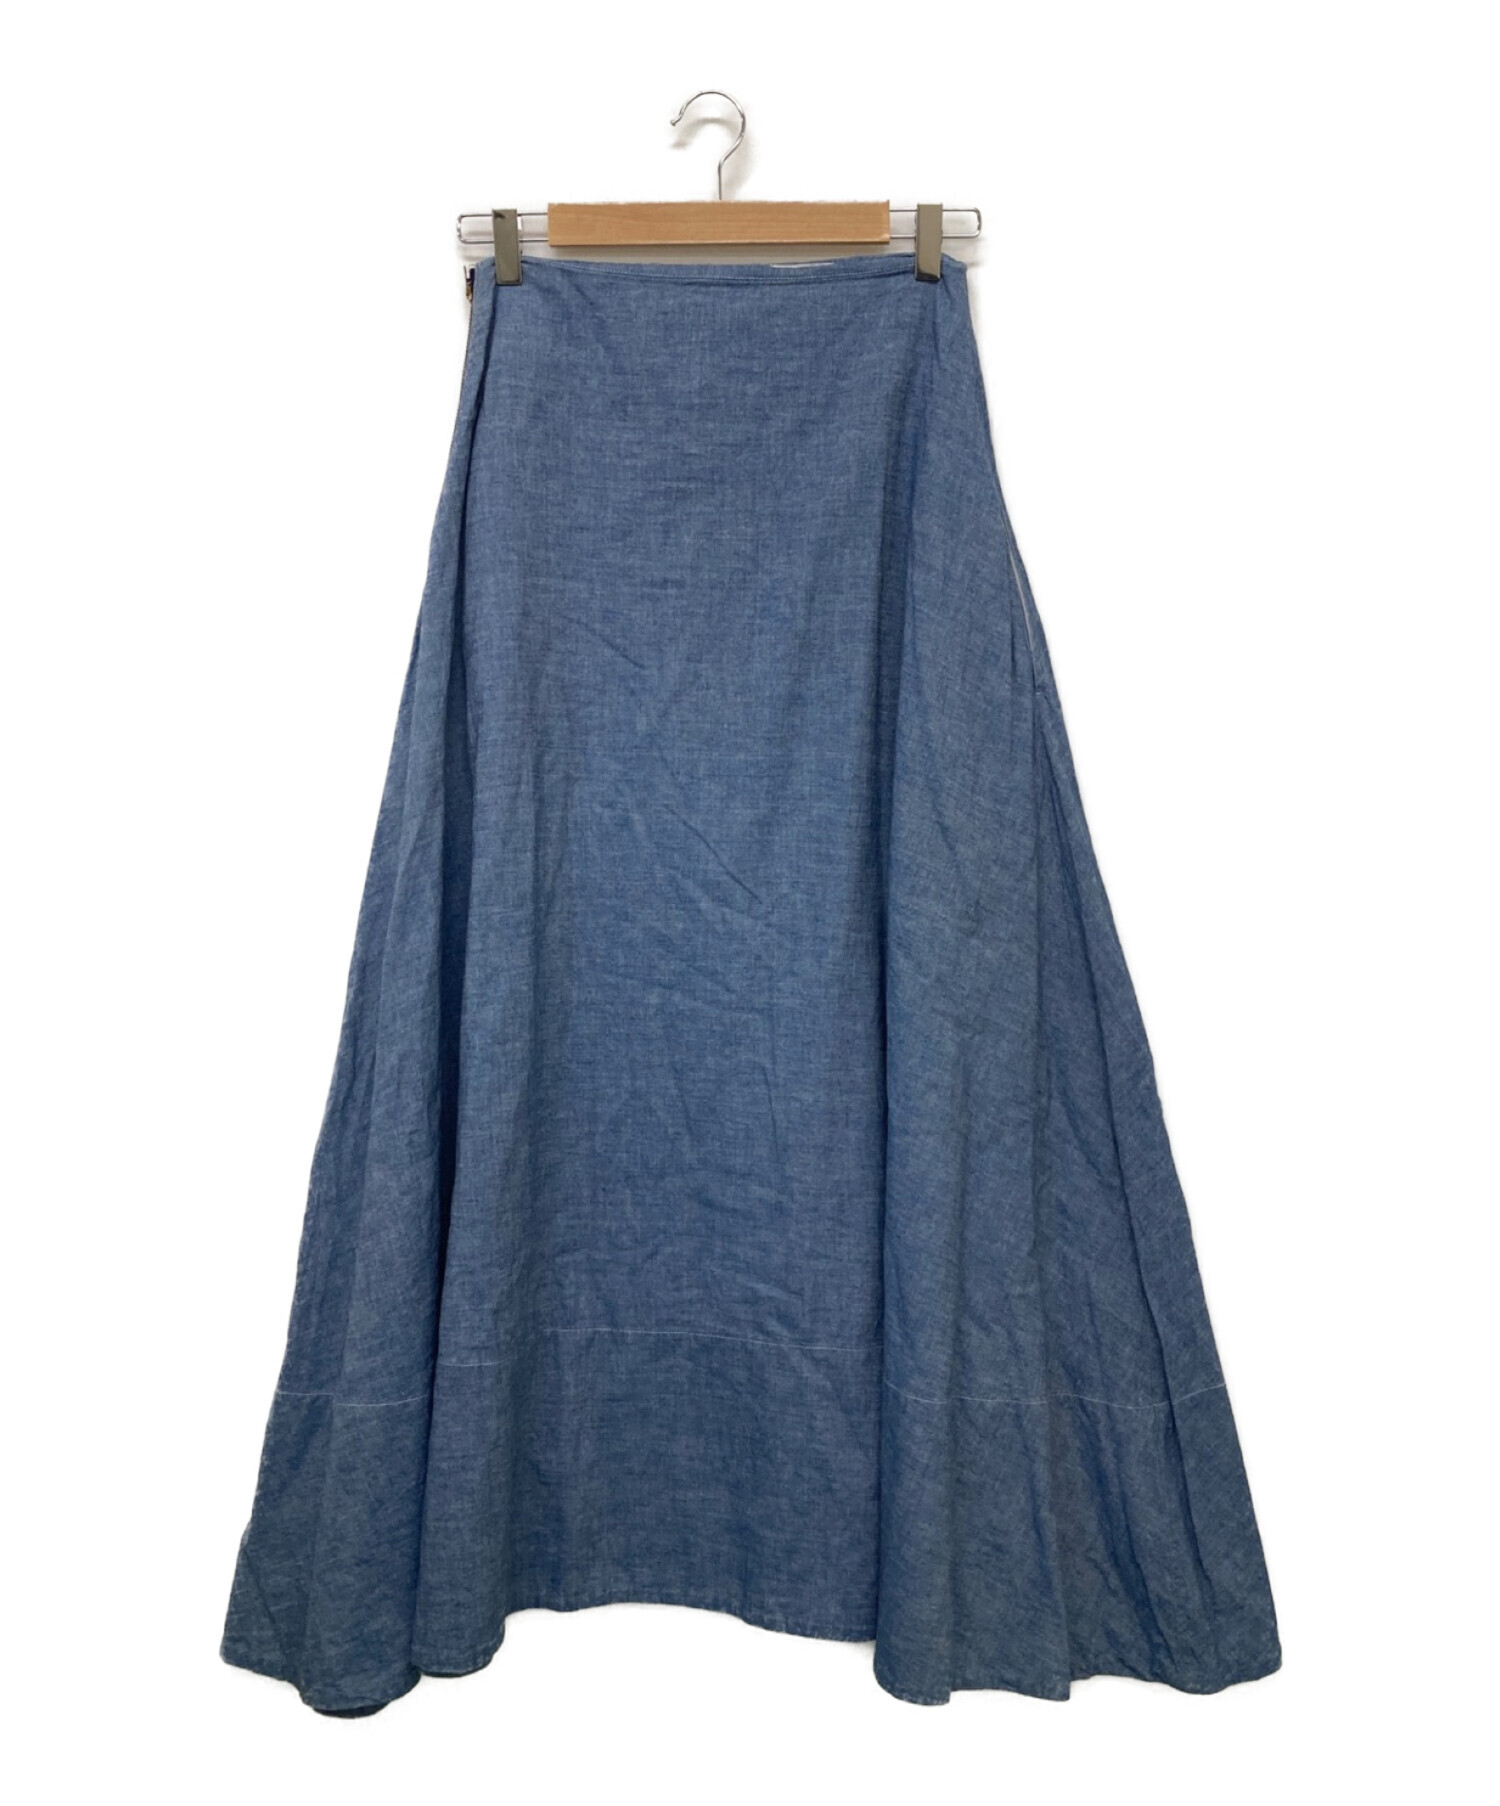 MADISONBLUE デニムスカート 2018 サイズ02 - スカート